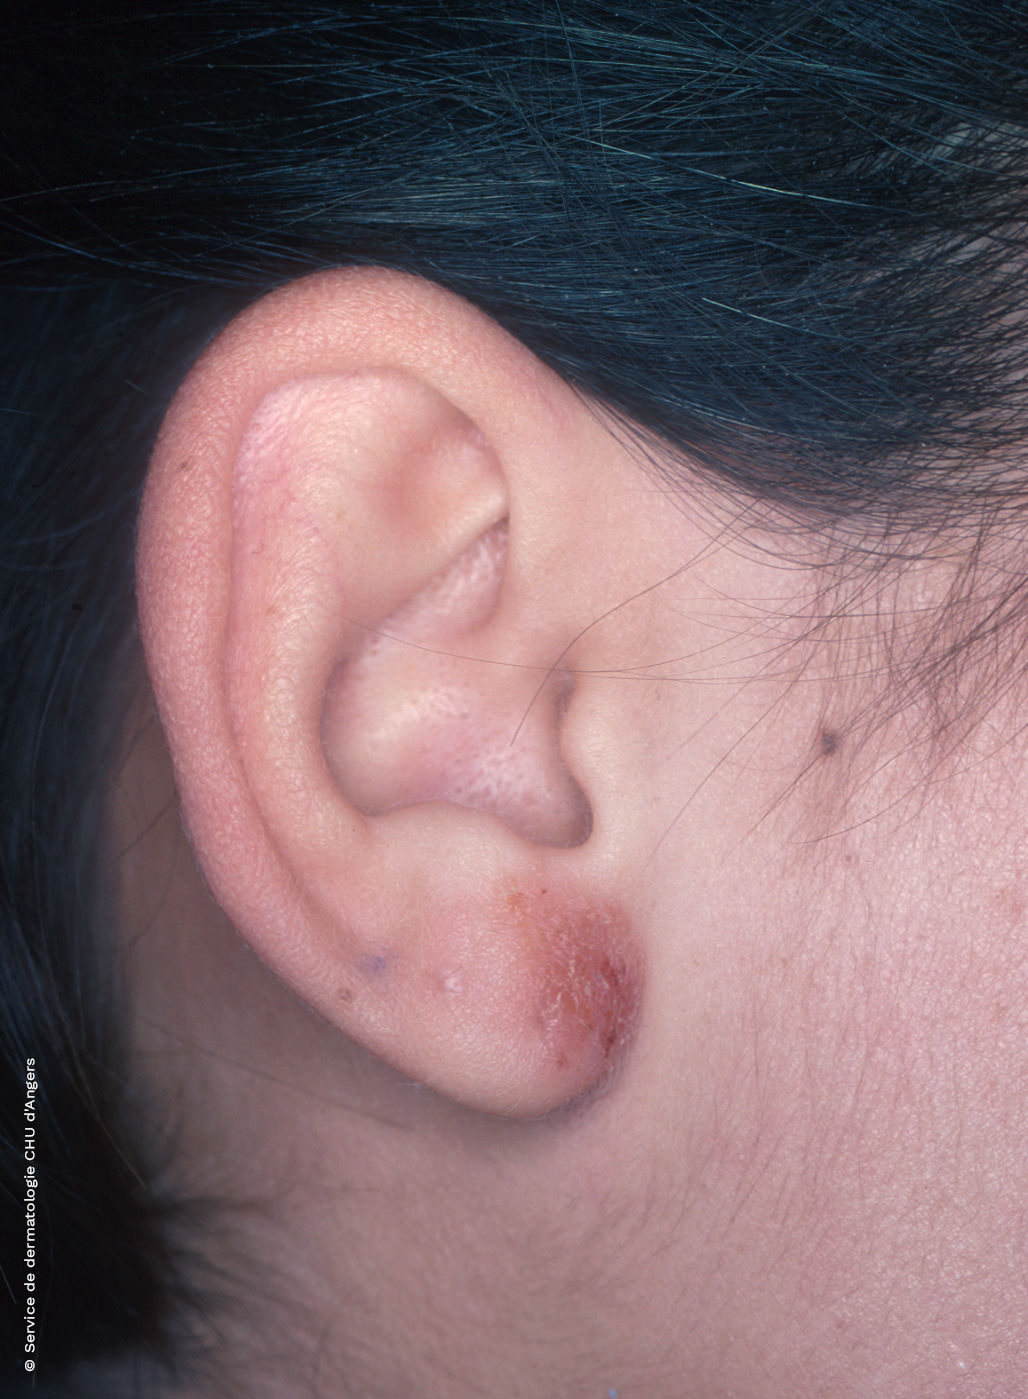 Eczema de contacto en la oreja debido al níquel